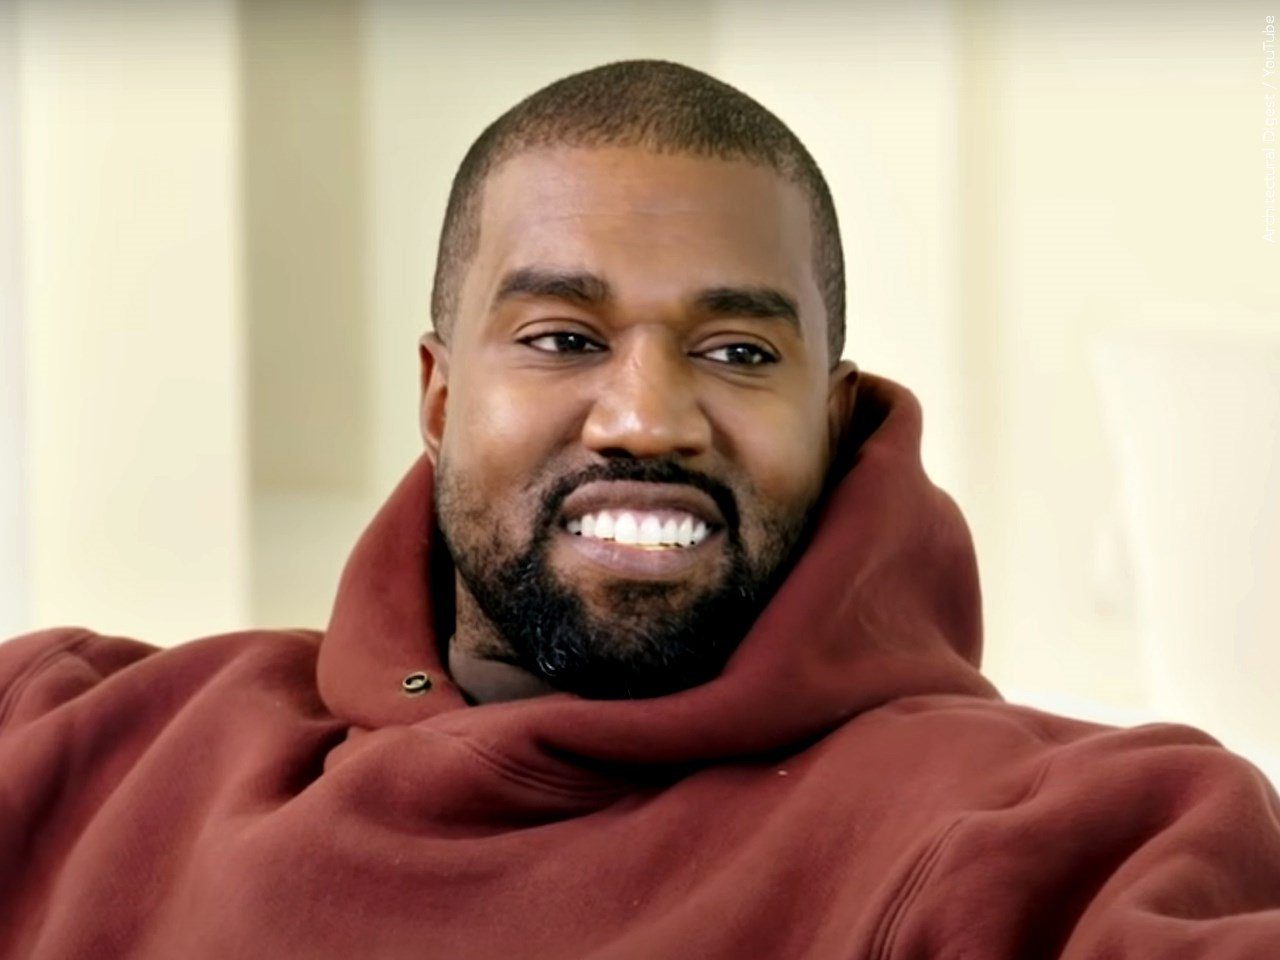 Kanye West sued for 'Gold Digger' sample